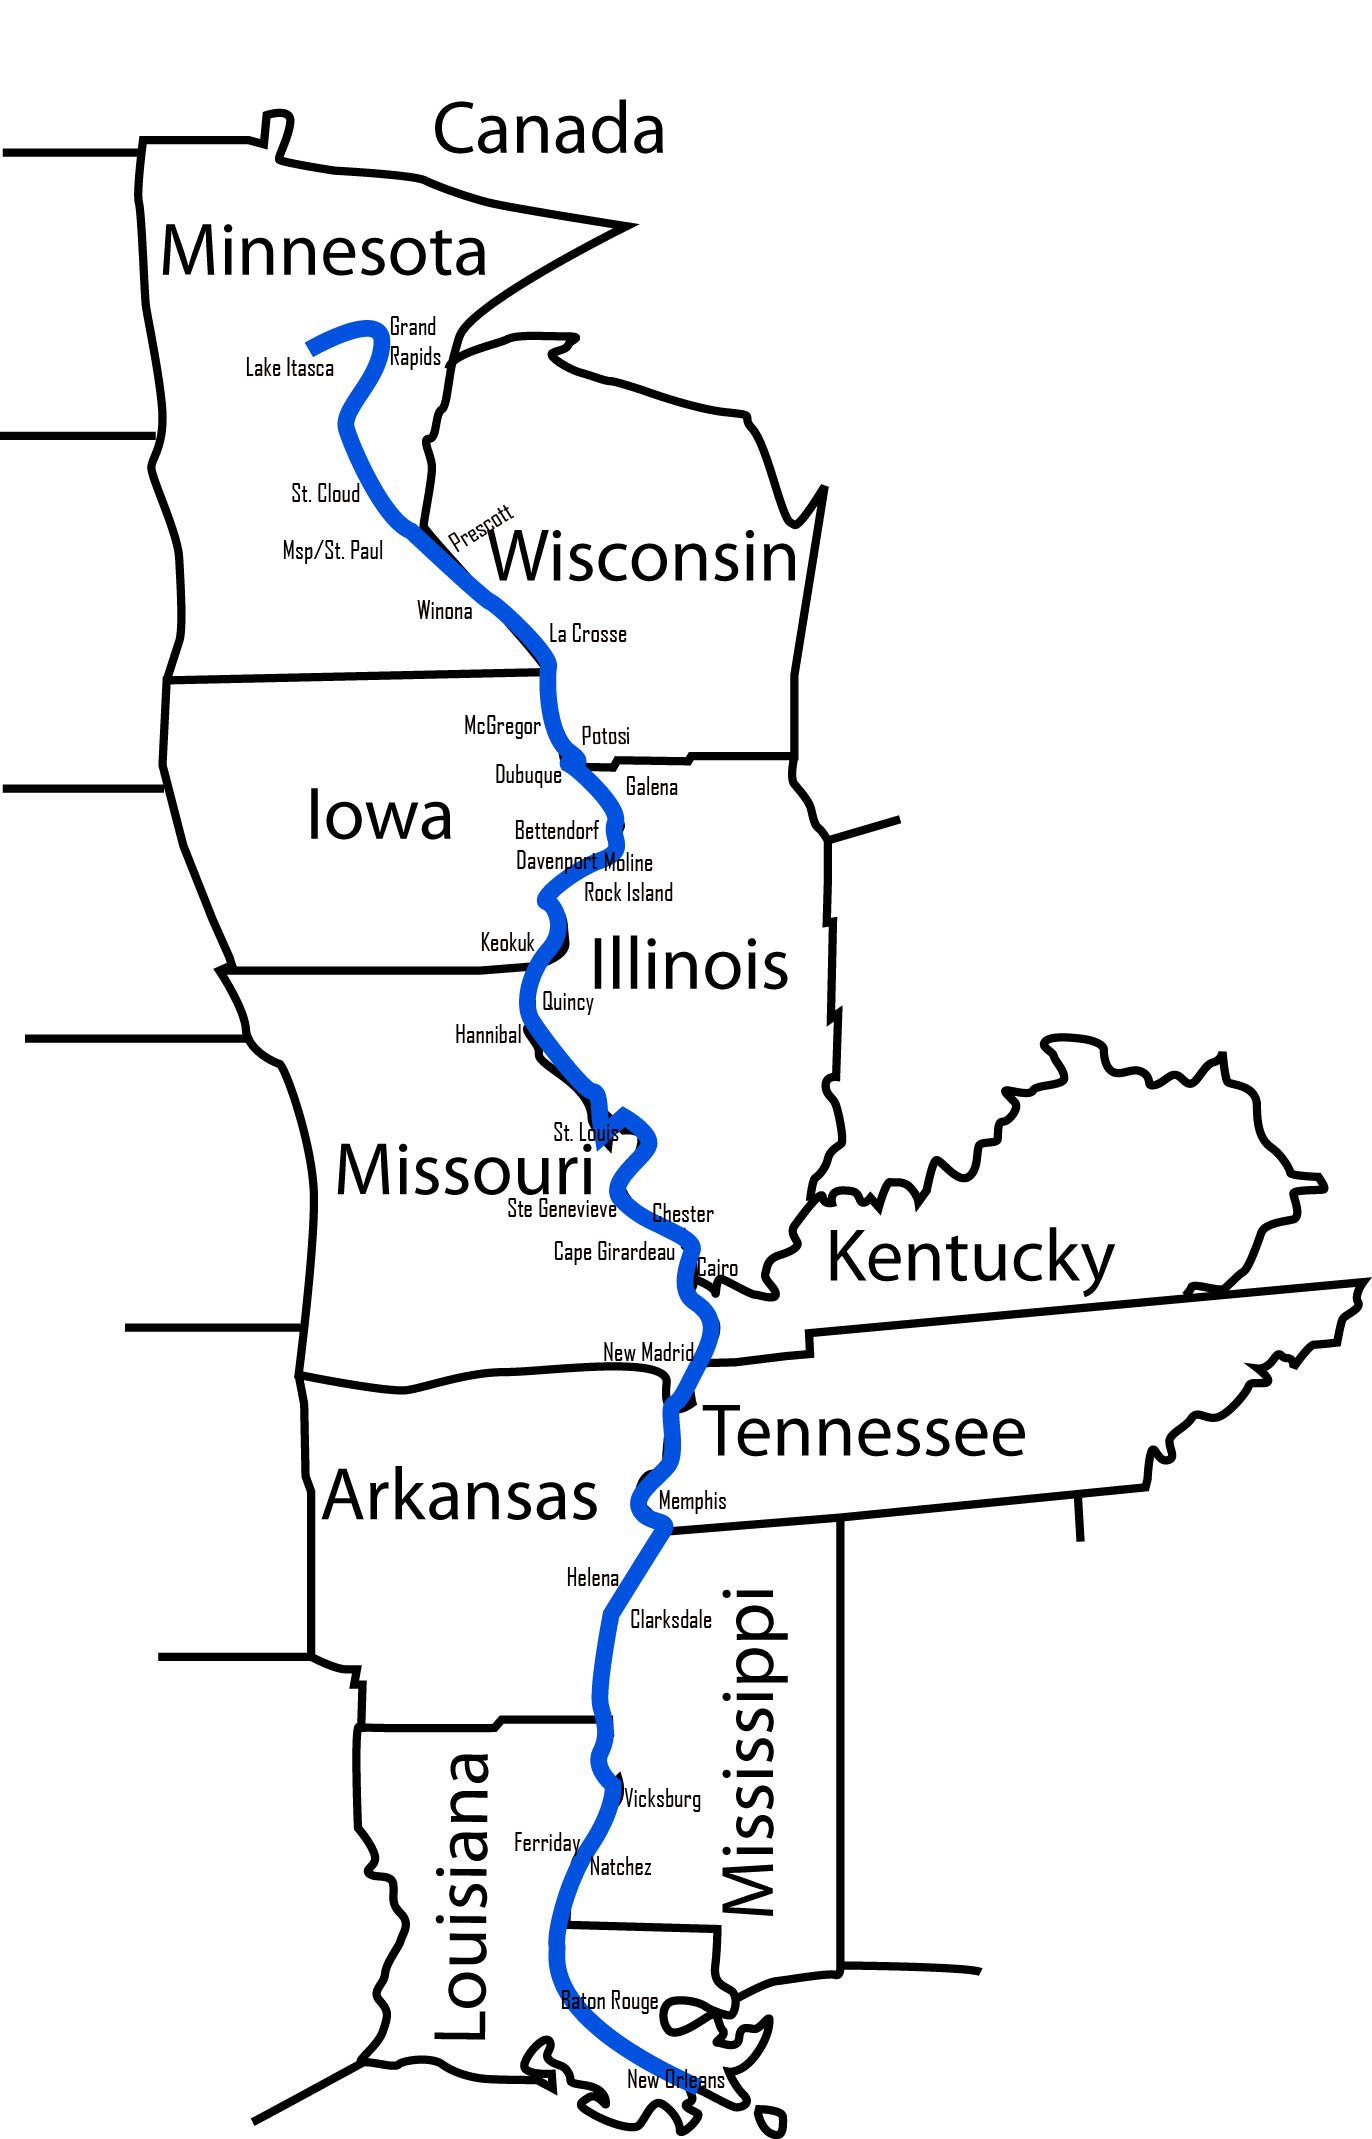 Крупные притоки реки миссисипи. Миссисипи с притоком Миссури на карте. Притоки Миссисипи на карте. Исток реки Миссисипи на карте. Течение реки Миссисипи на карте.